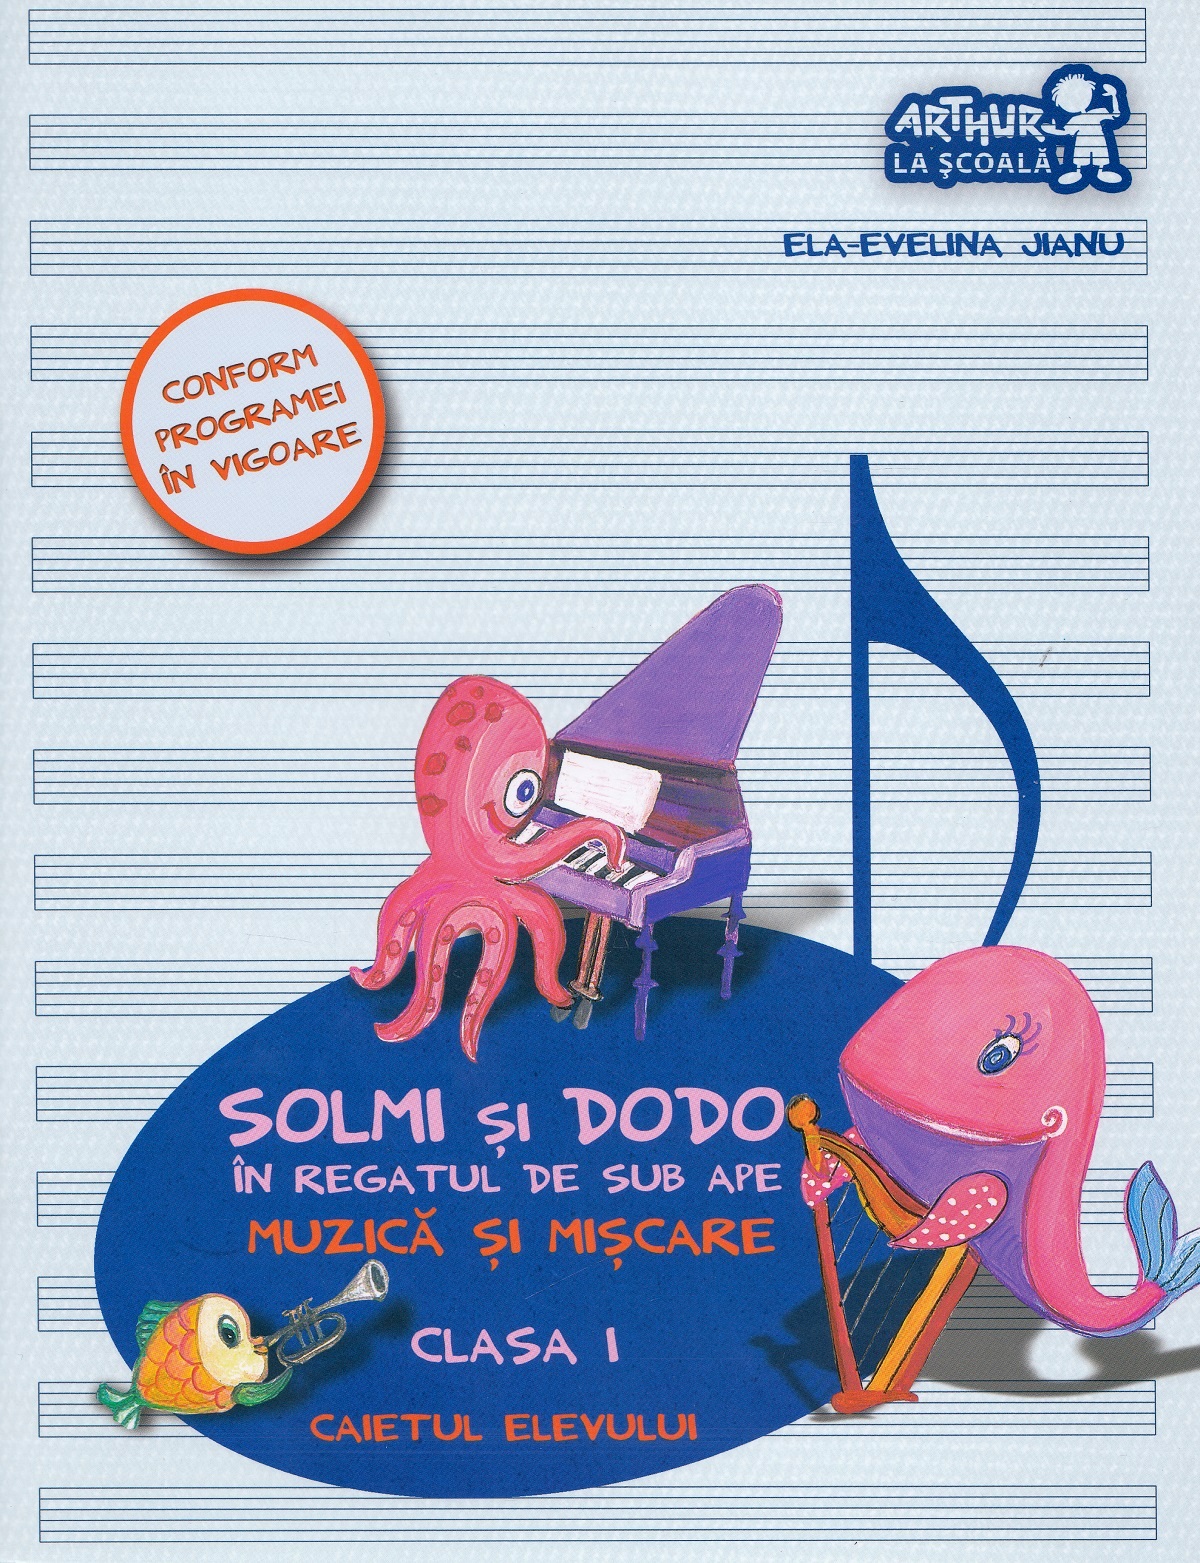 Muzica si miscare - Clasa 1 - Caietul elevului. Solmi si Dodo in Regatul de sub ape - Ela-Evelina Jianu